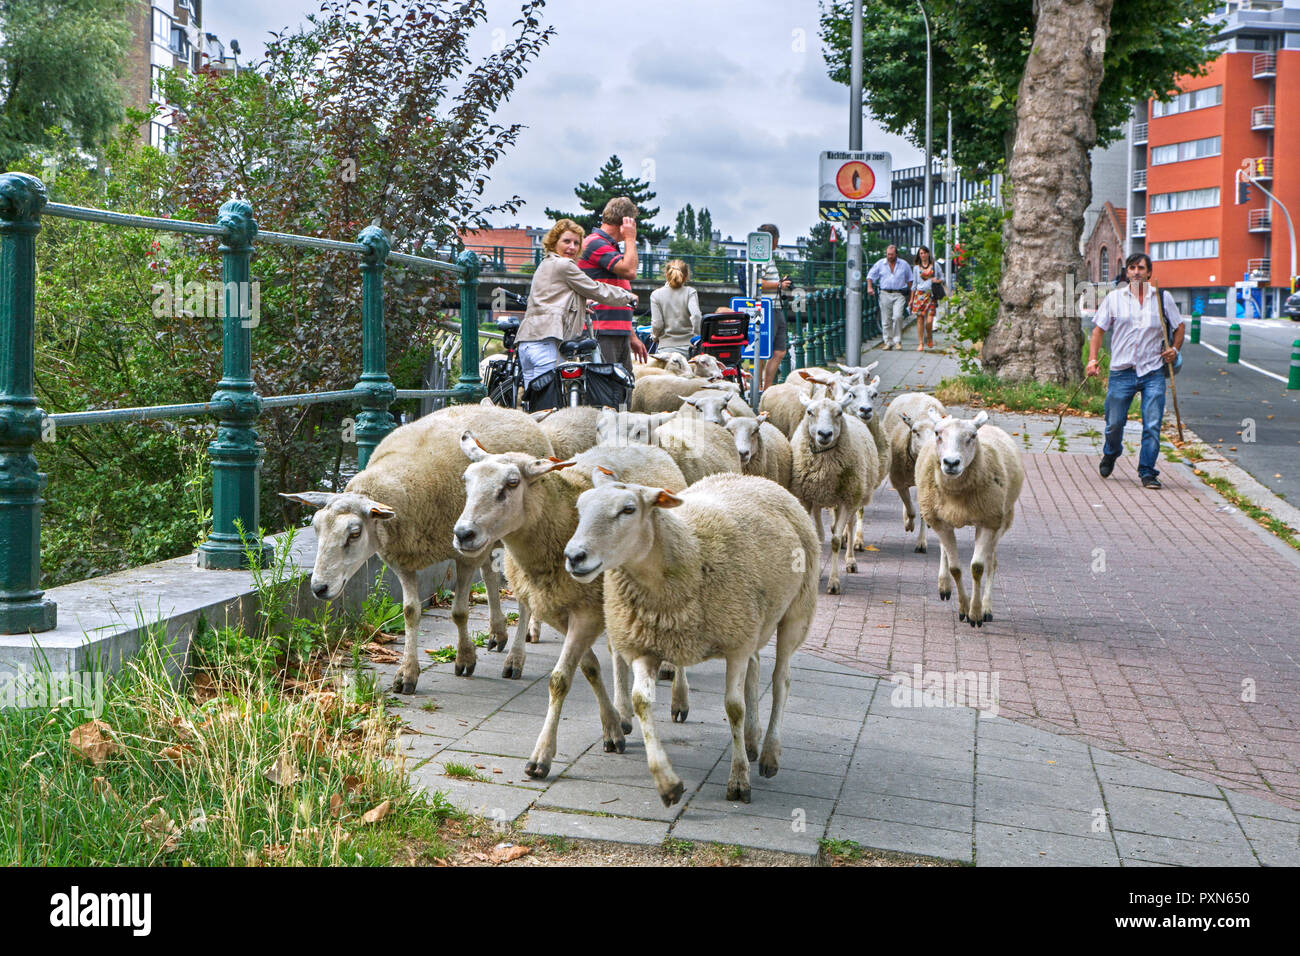 L'élevage berger troupeau de moutons en été dans cette rue à brouter l'herbe dans les berges du canal dans la ville GAND / GENT, Flandre orientale, Belgique Banque D'Images